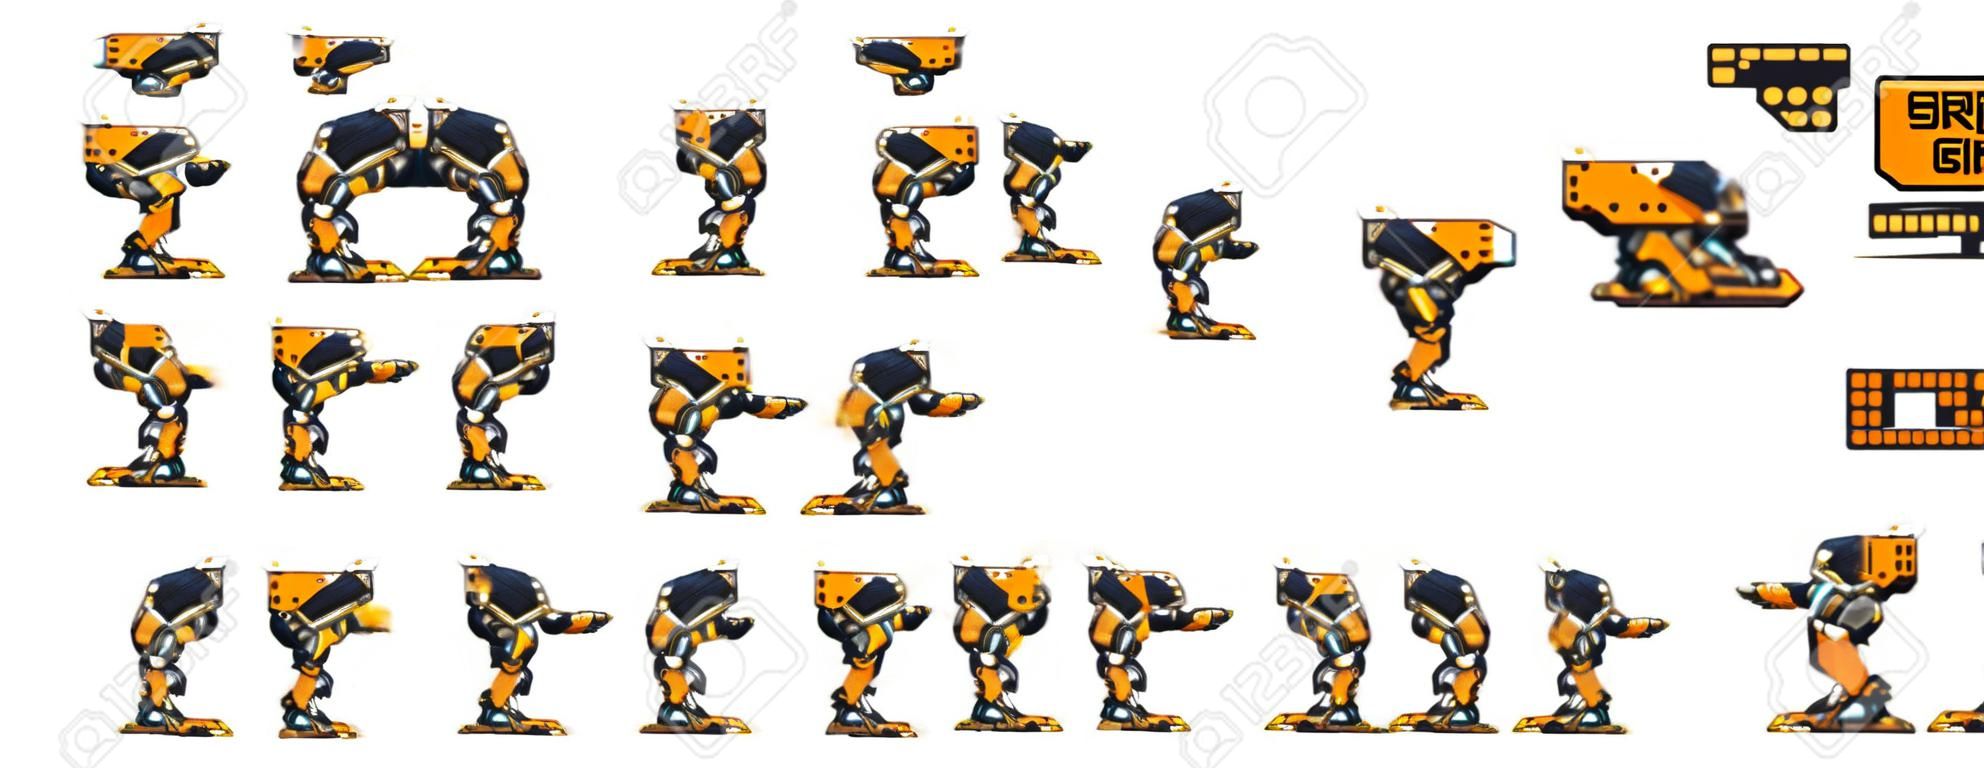 Sprites de personajes de juegos de robots enemigos animados